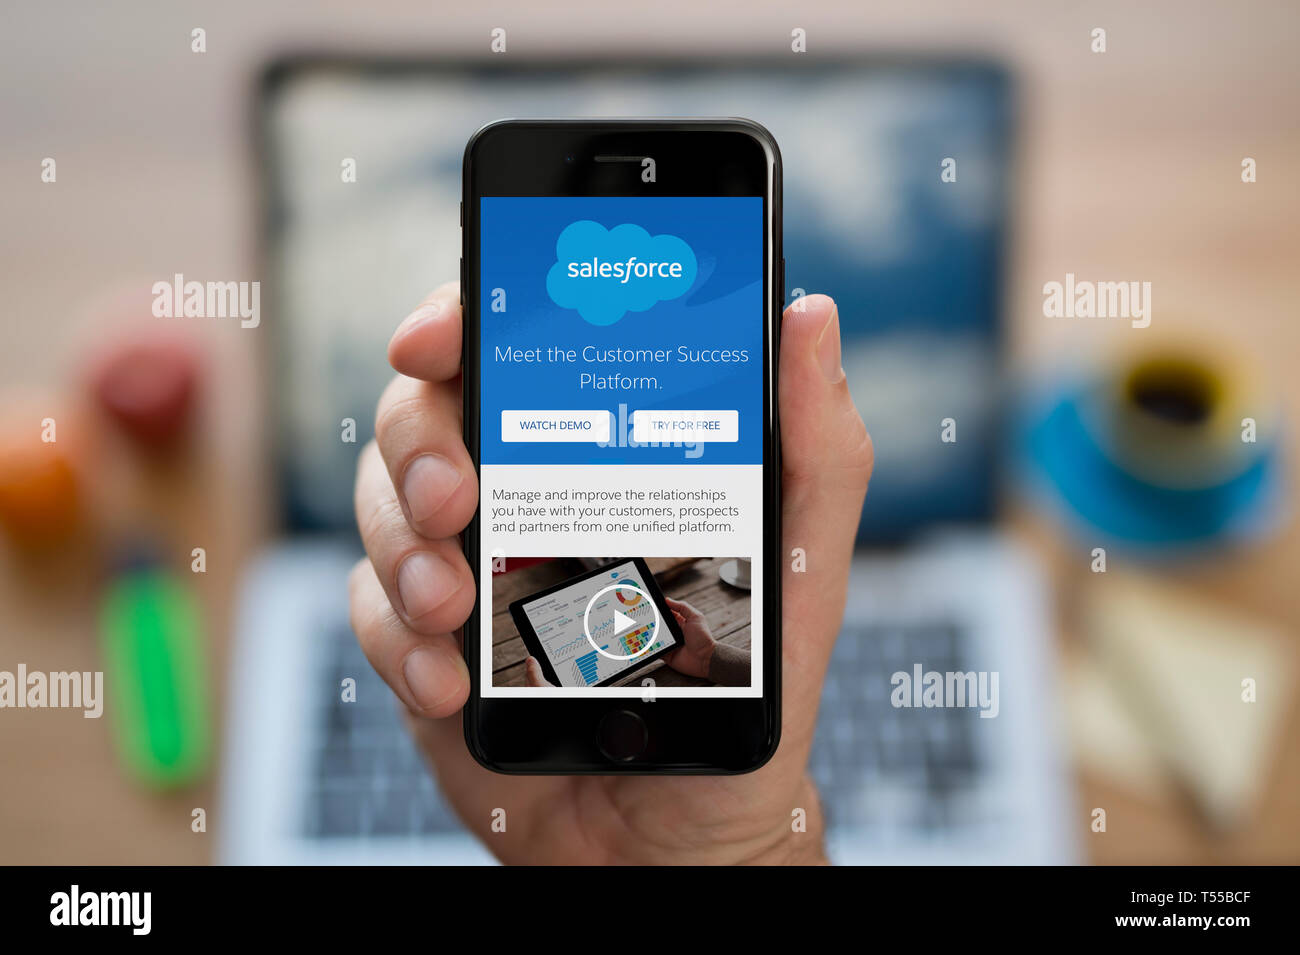 Ein Mann schaut auf seinem iPhone die zeigt die Salesforce Logo (nur redaktionelle Nutzung). Stockfoto